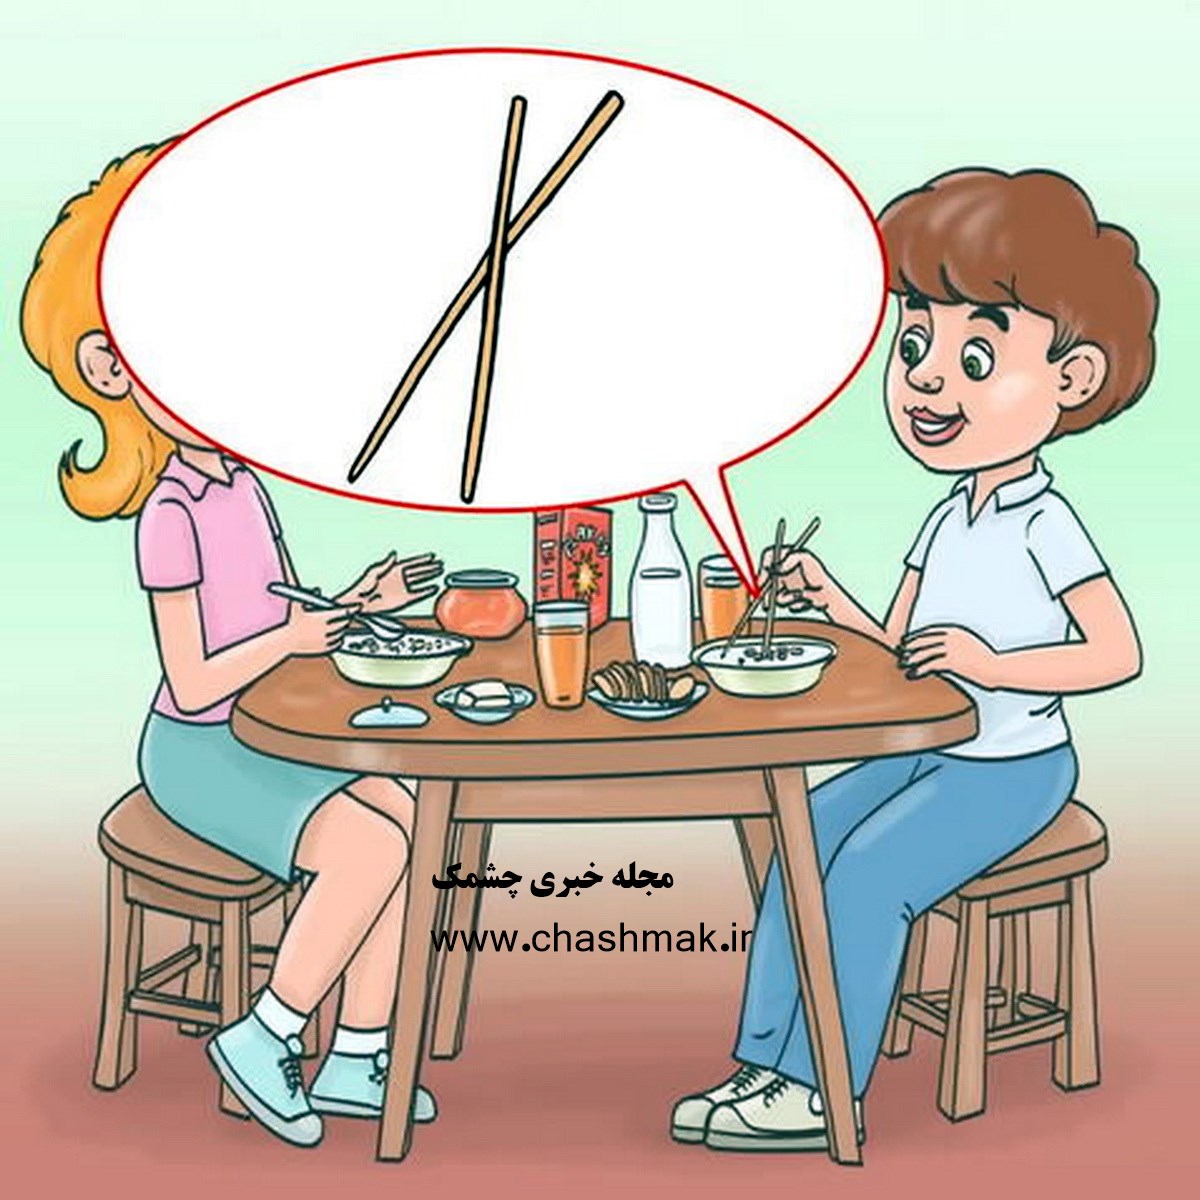 پاسخ آزمون شناخت اشتباه میز غذاخوری